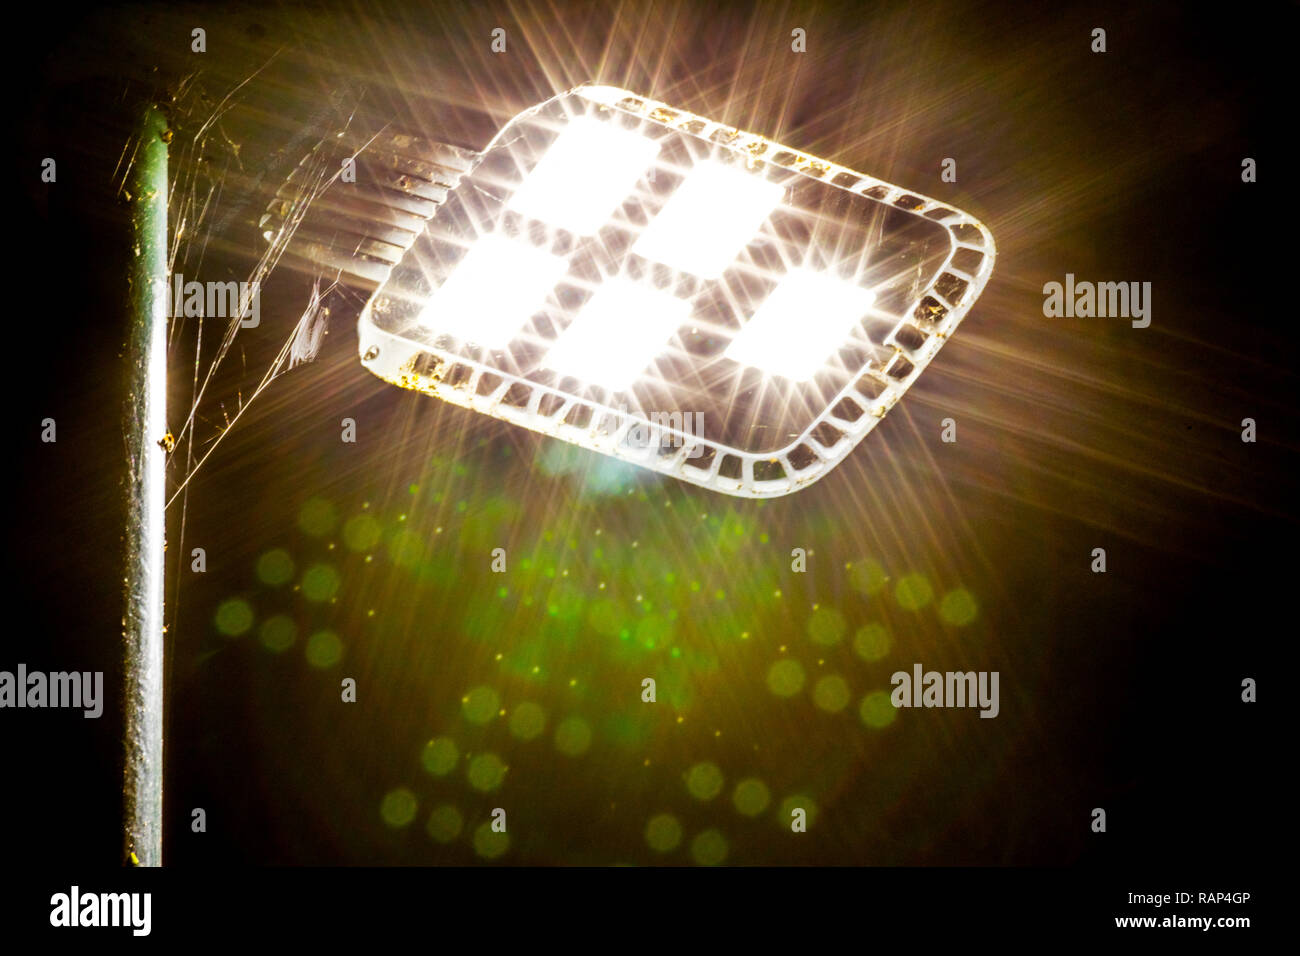 LED-Straßenbeleuchtung blendung mit Phantom Arrays, Beispiele für  lambertsche Lichtverteilung von LED-ausgesetzt-chipmodul Straße Licht  Leuchte Stockfotografie - Alamy